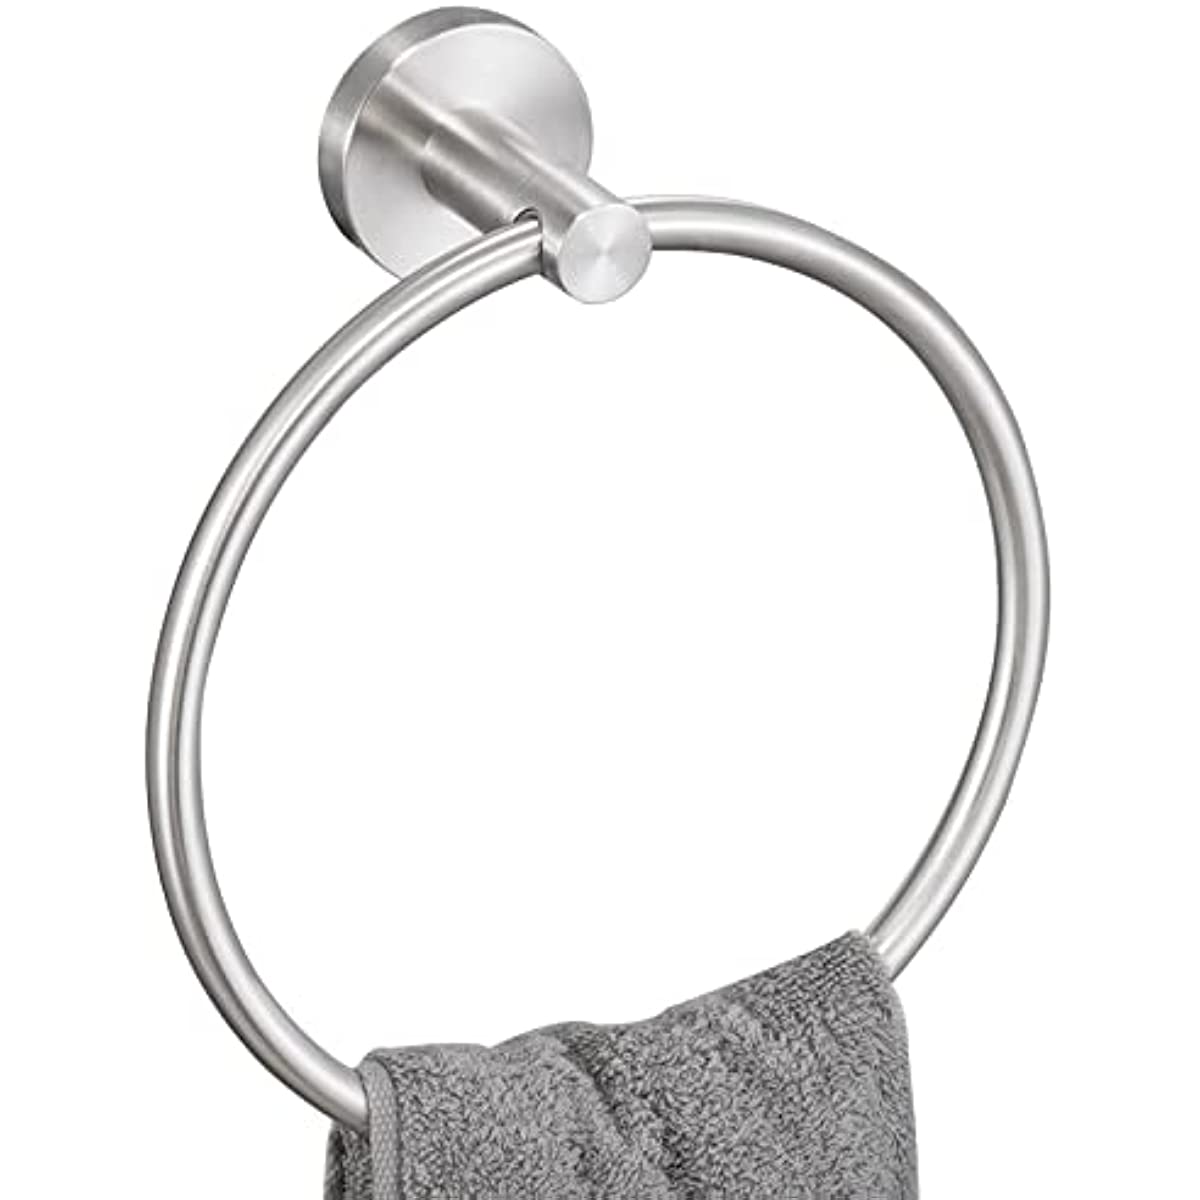 Hand Towel Ring Holder, Bathroom Towel Holder Brushed Nickel